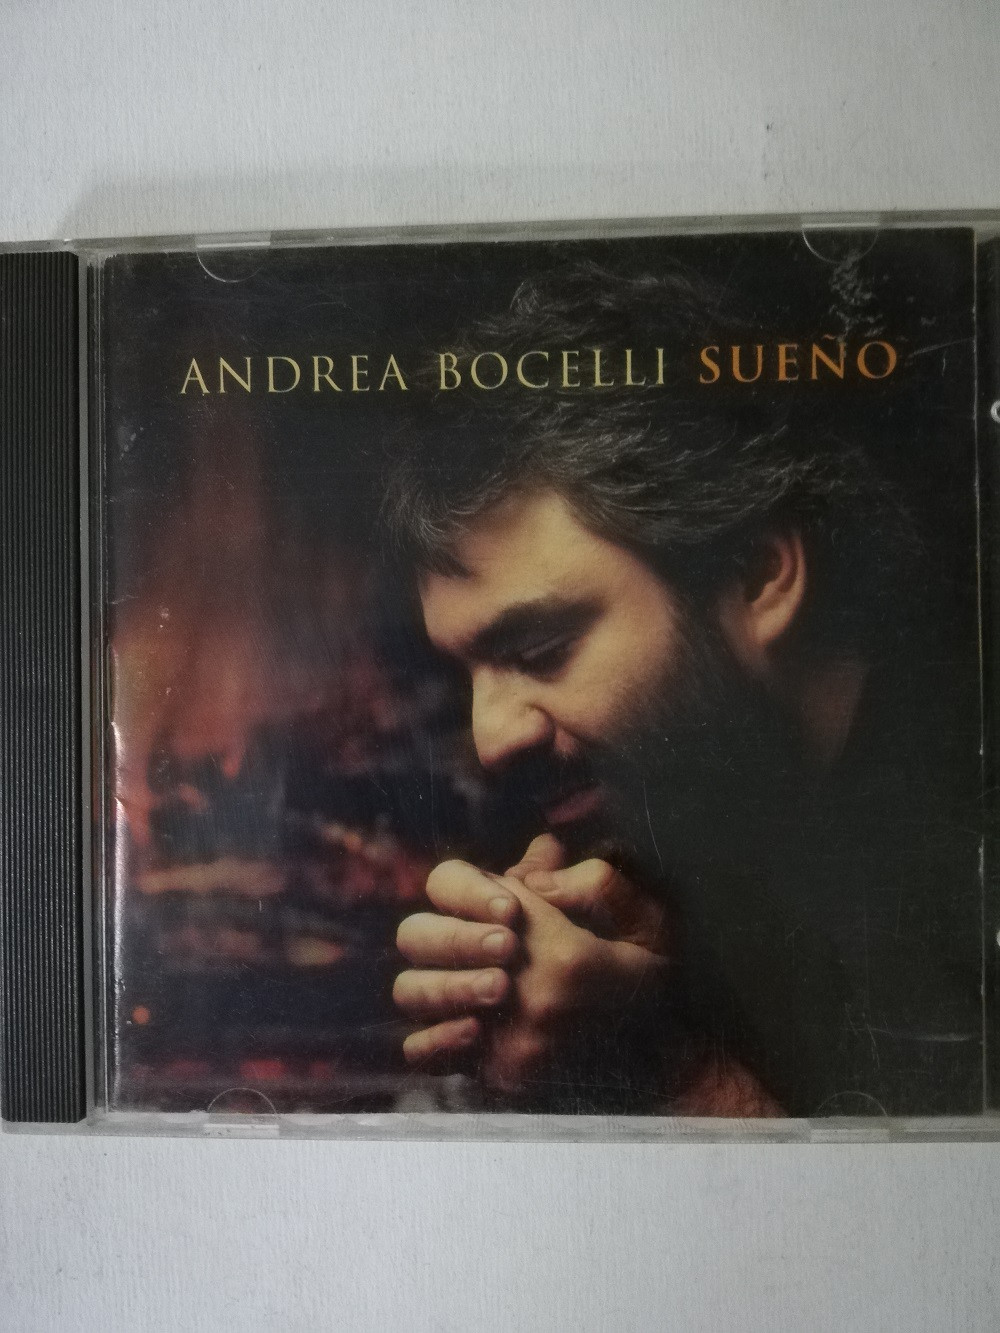 Imagen CD ANDREA BOCELLI - SUEÑO